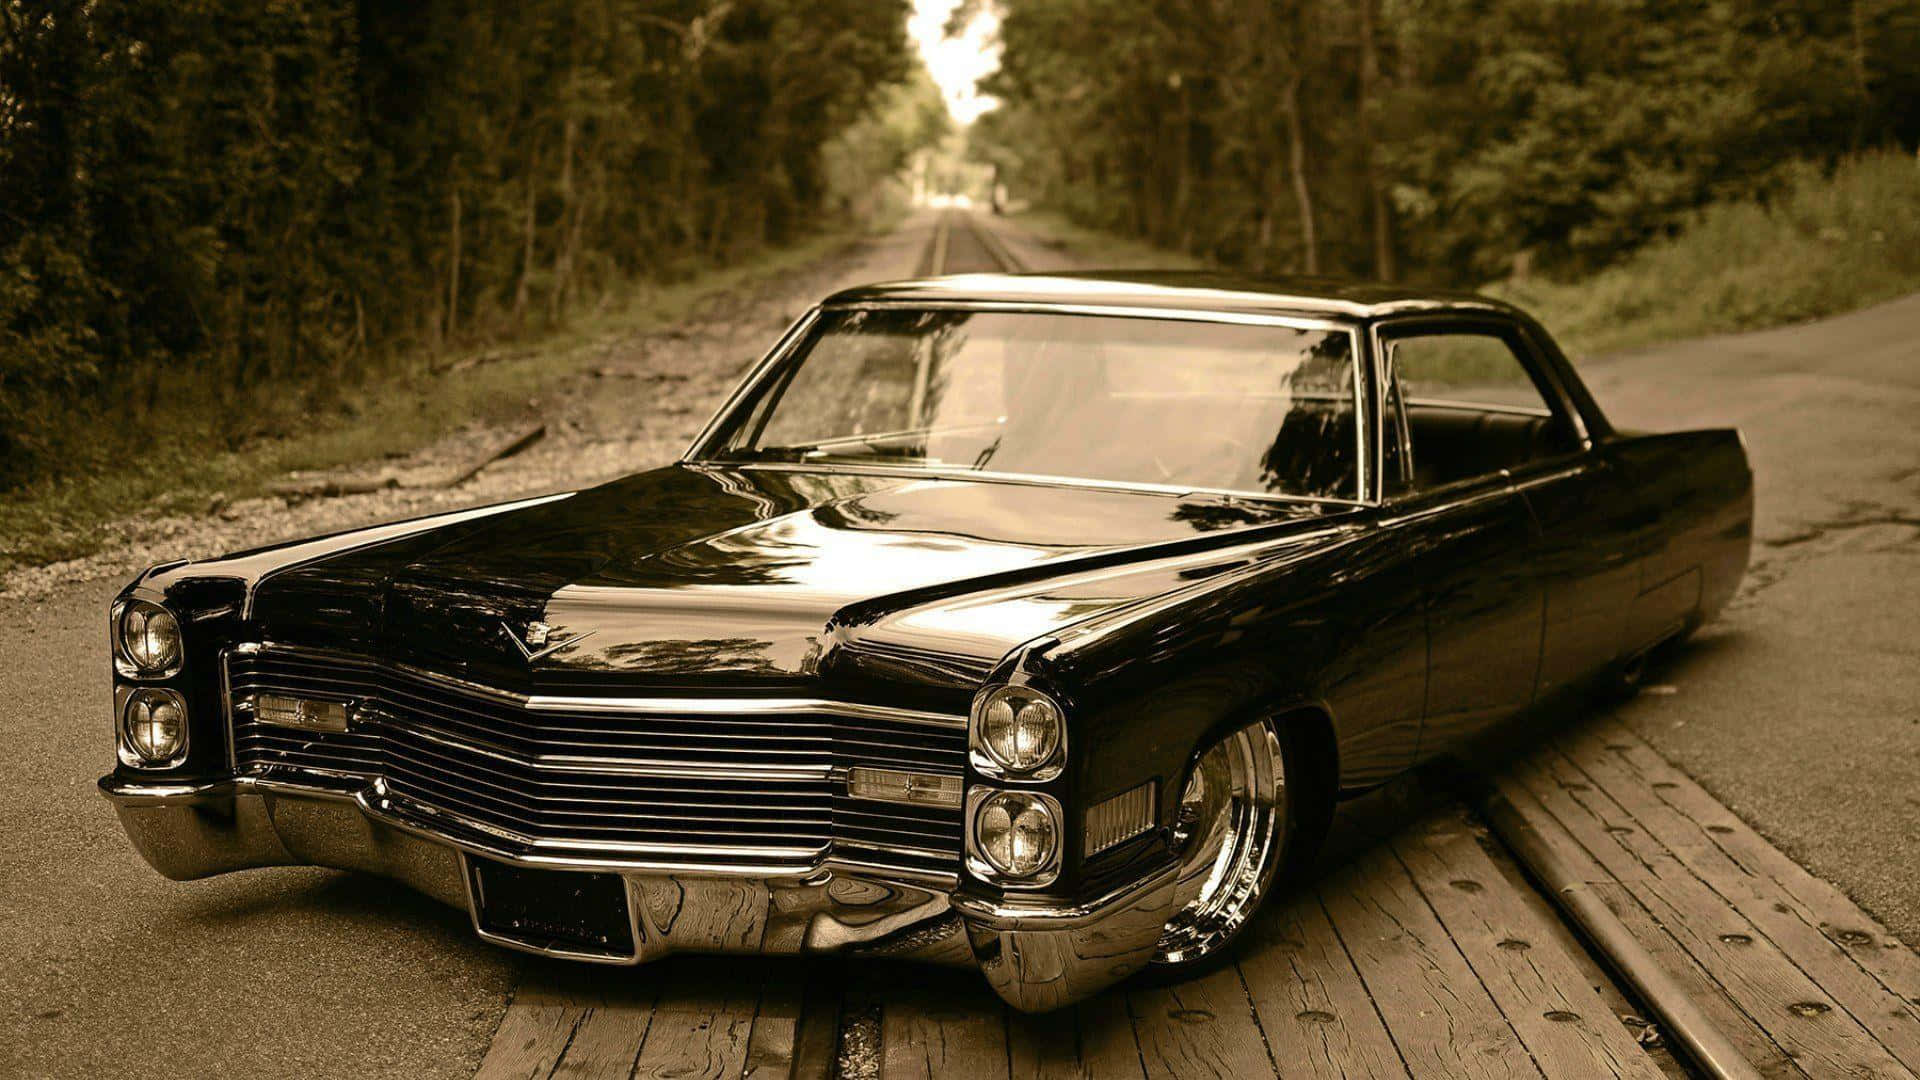 Denklassiske Cadillac - Tidsløst Bil Design I Særklasse.